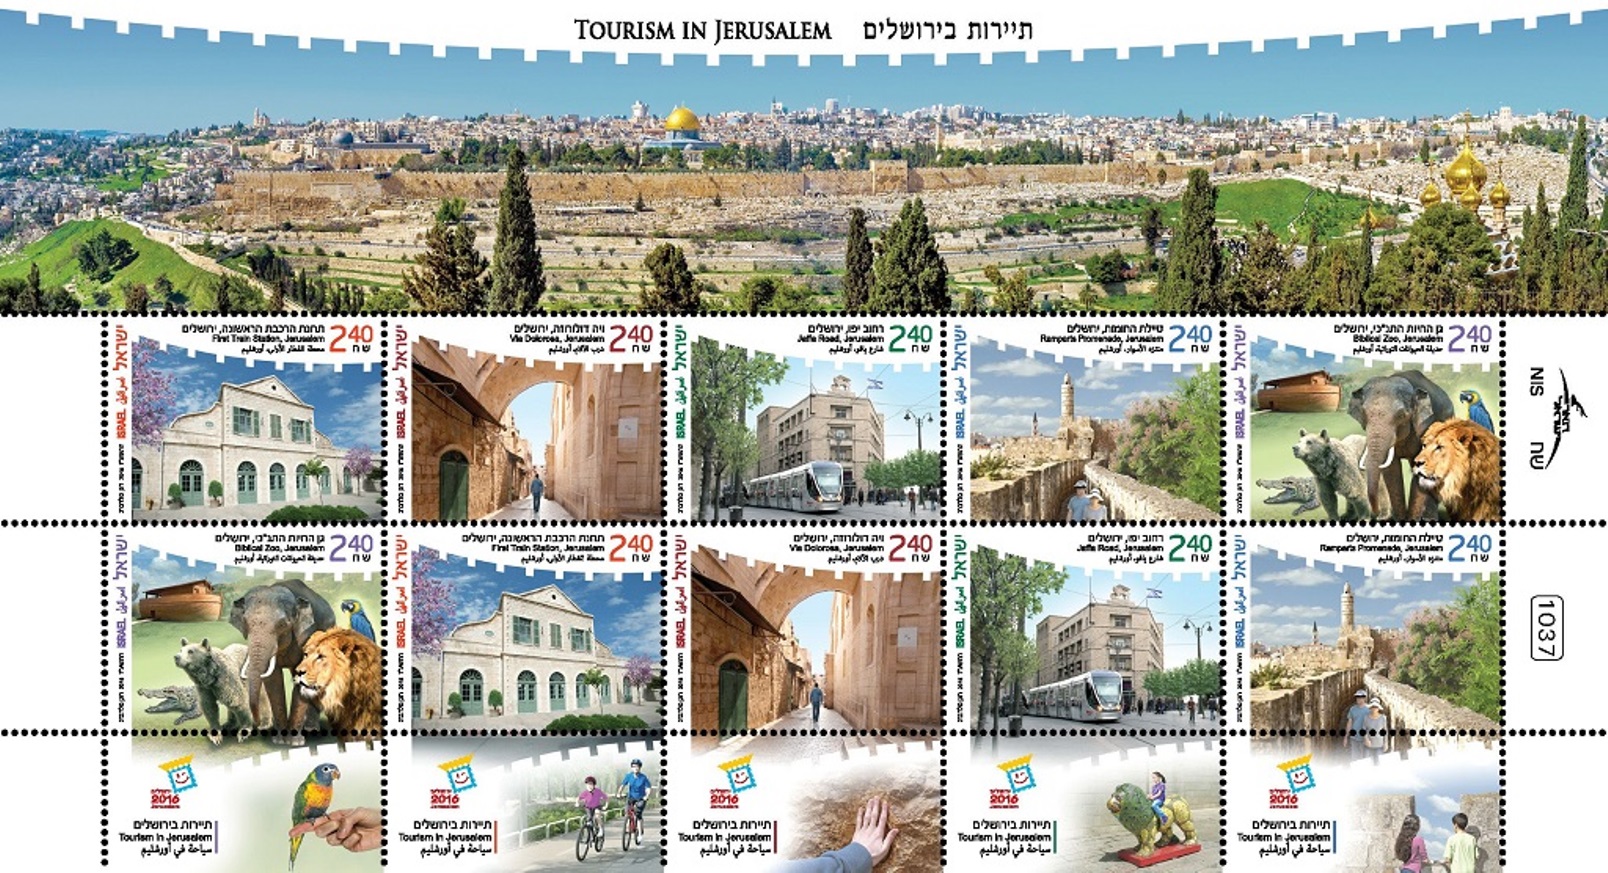 Jerusalem tourism stamp sheet issued in November 2016. Image courtesy of Israel Post